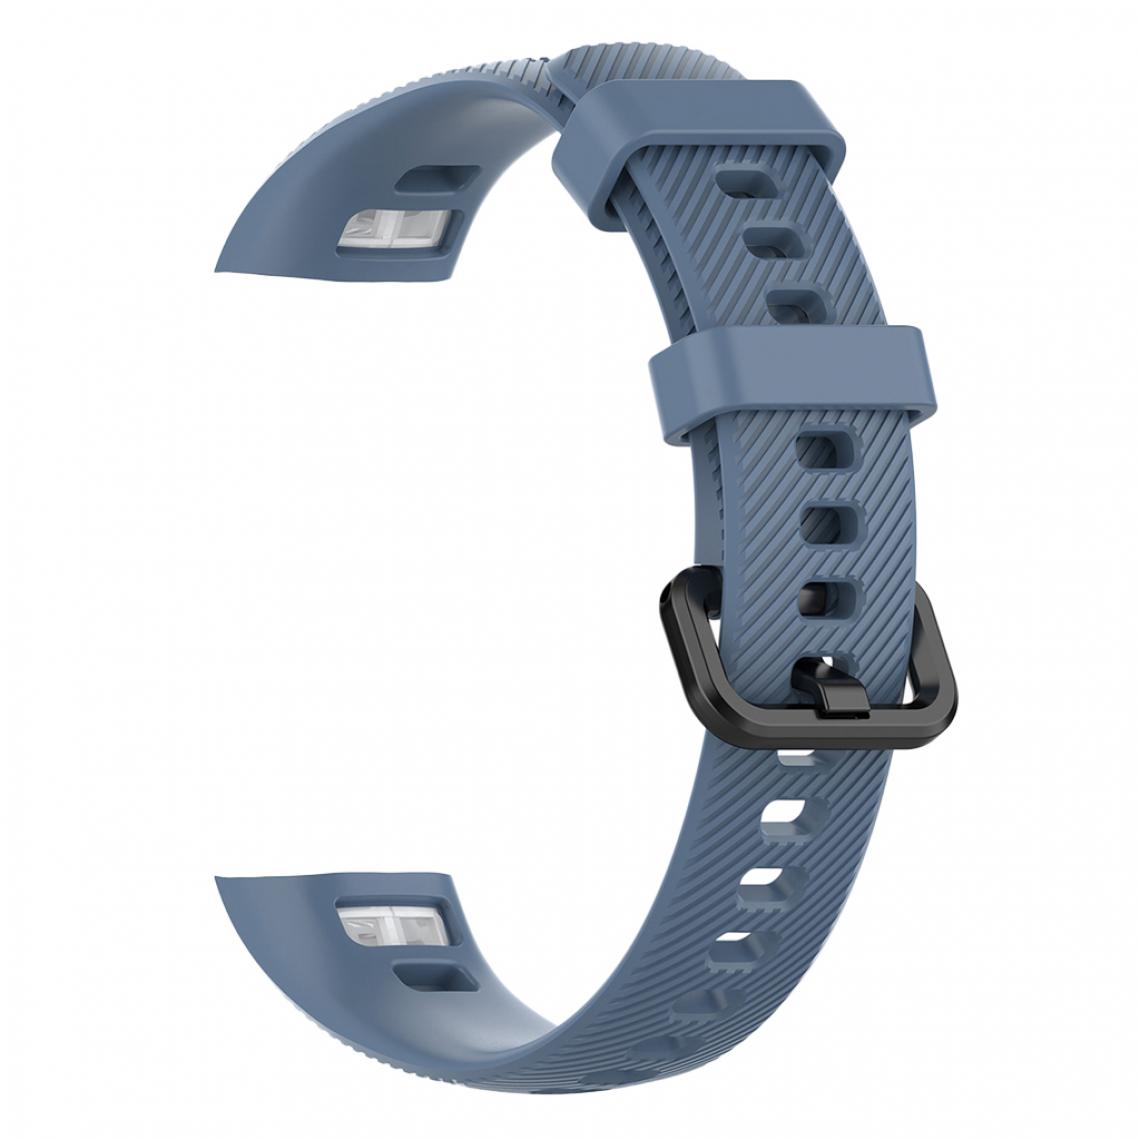 marque generique - Bracelet souple pour Huawei Honor 4 Bracelet de rechange pour montre intelligente, Bleu foncé 1 - Accessoires montres connectées